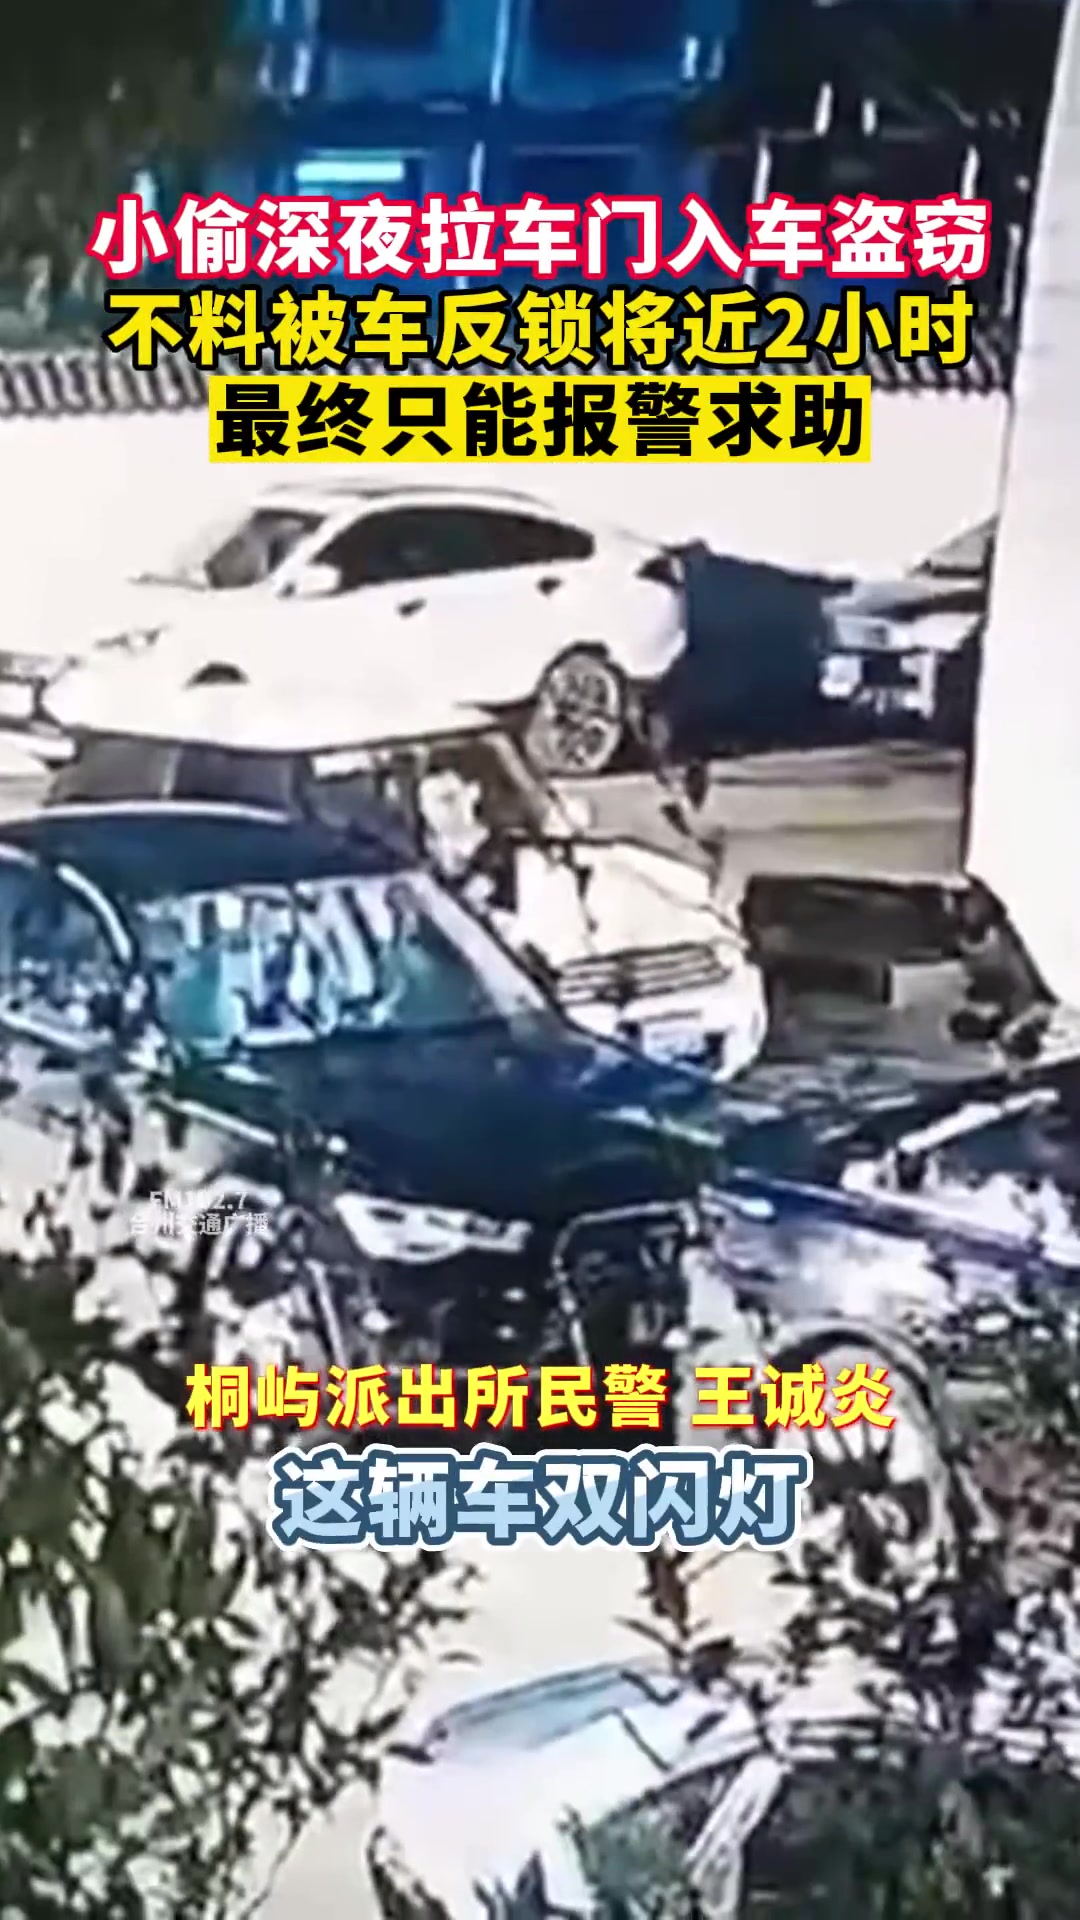 2岁幼童将自己反锁车内，警察用这个方式紧急营救！ - 中国交通网 - Traffic in China